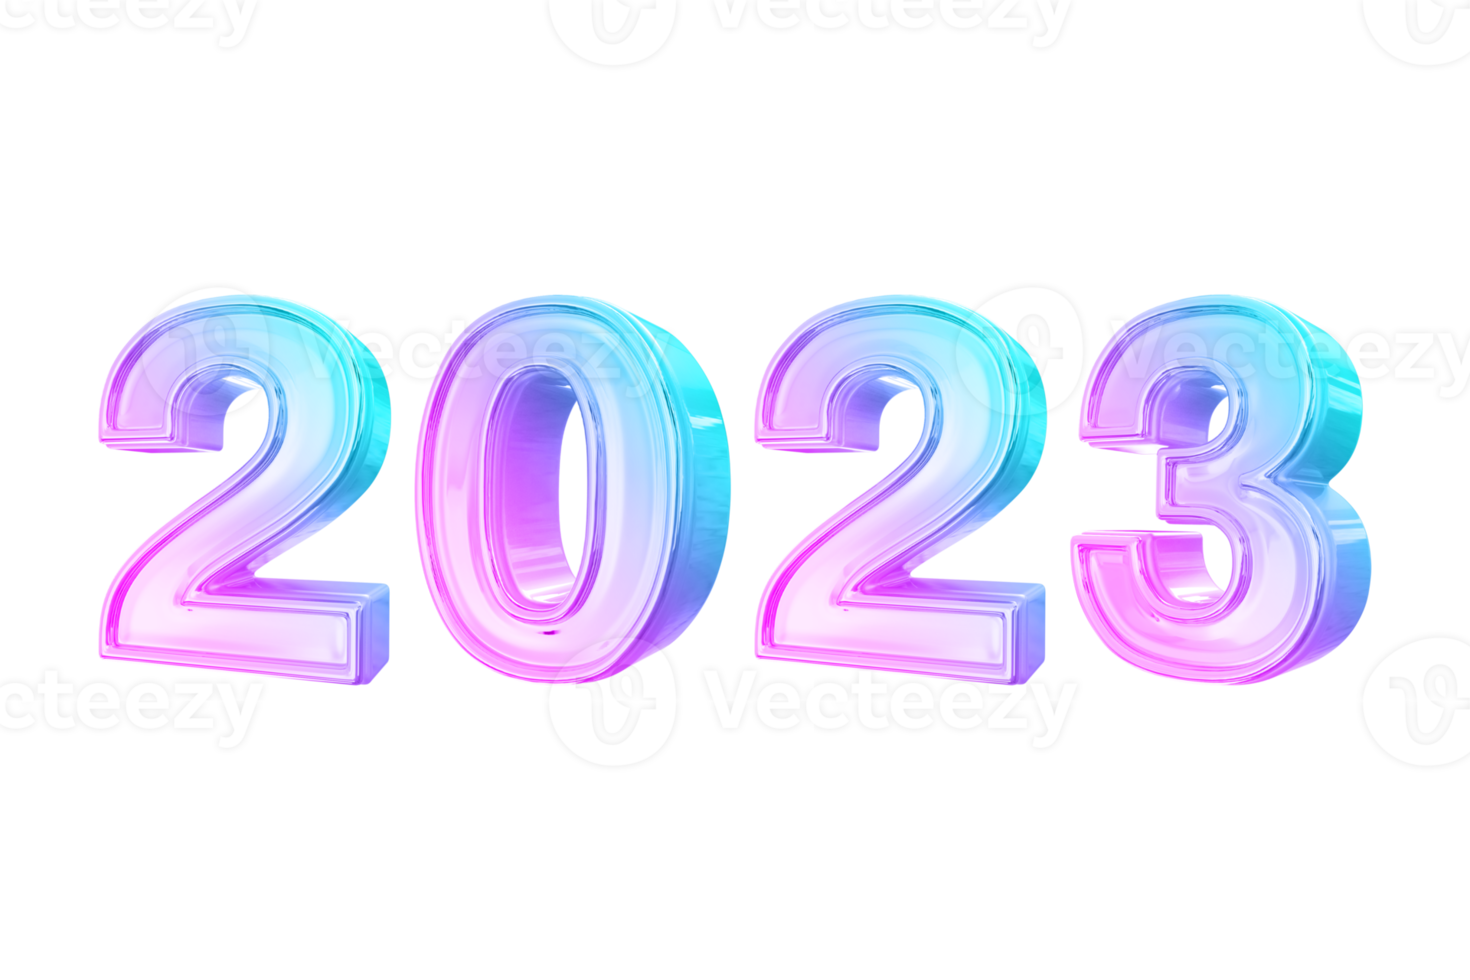 conceito de 2023, feliz ano novo2023. logotipo de tipografia 2023 para celebração, texto moderno colorido 3d para branding, banner, capa, cartão, mídia social, png. png